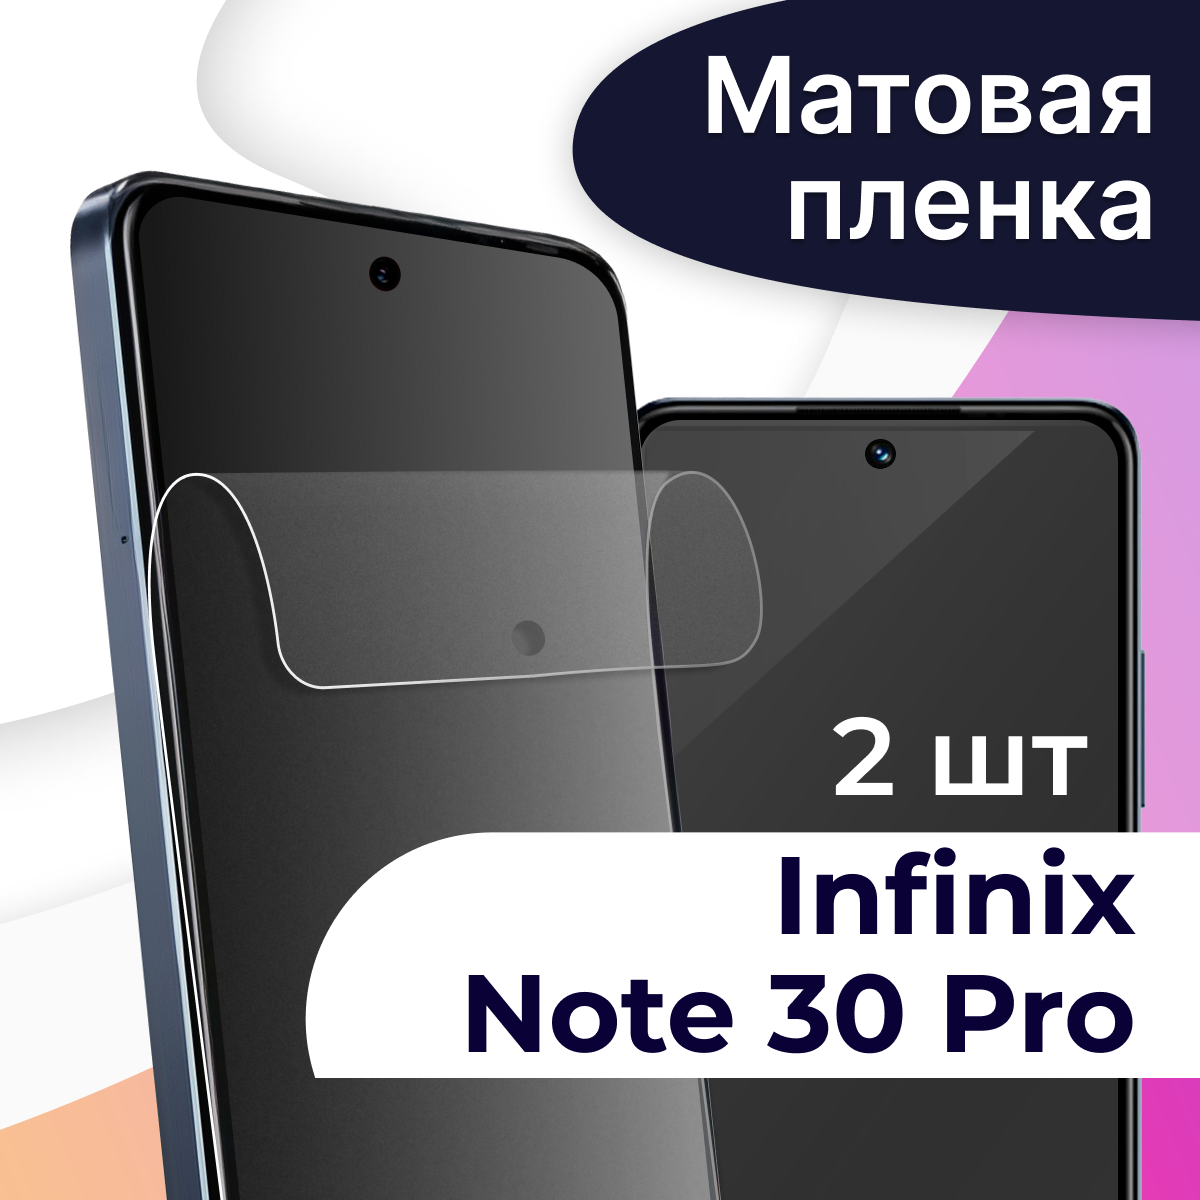 Матовая пленка на телефон Infinix Note 30 Pro / Гидрогелевая противоударная пленка для смартфона Инфиникс Нот 30 Про / Защитная пленка